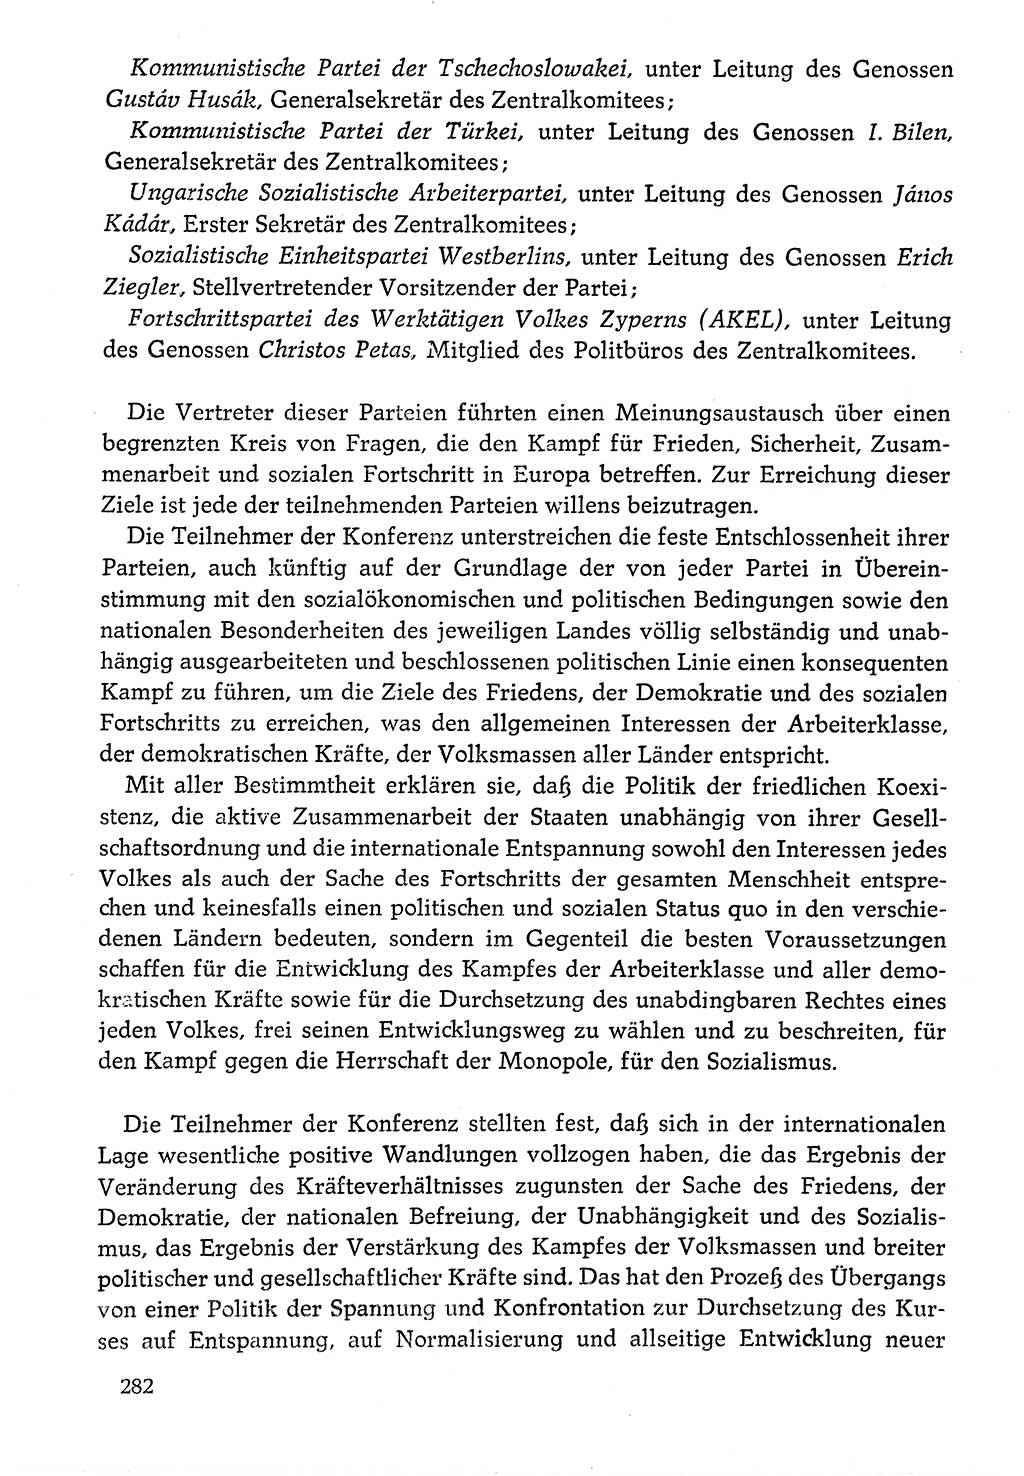 Dokumente der Sozialistischen Einheitspartei Deutschlands (SED) [Deutsche Demokratische Republik (DDR)] 1976-1977, Seite 282 (Dok. SED DDR 1976-1977, S. 282)